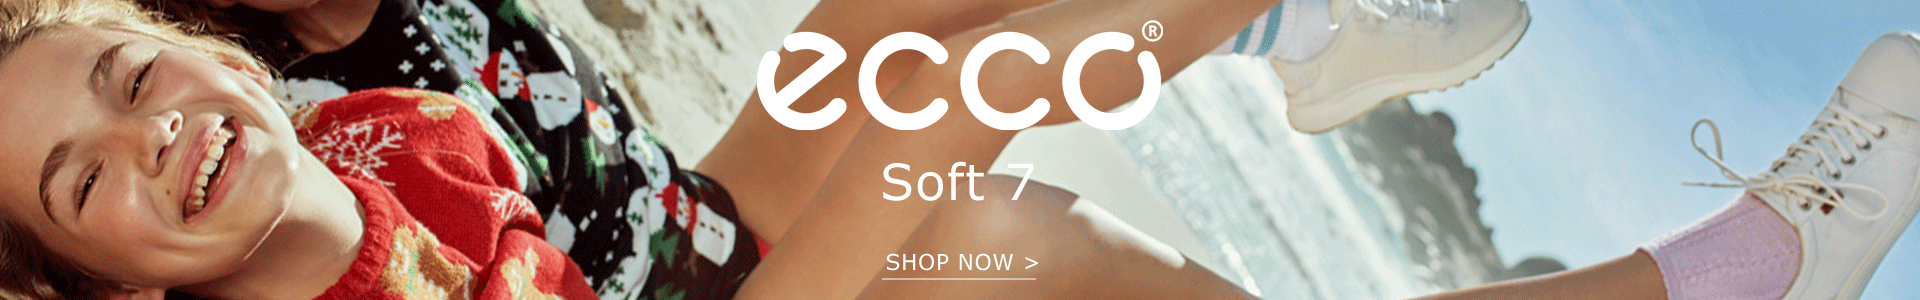 Shop Ecco Soft 7